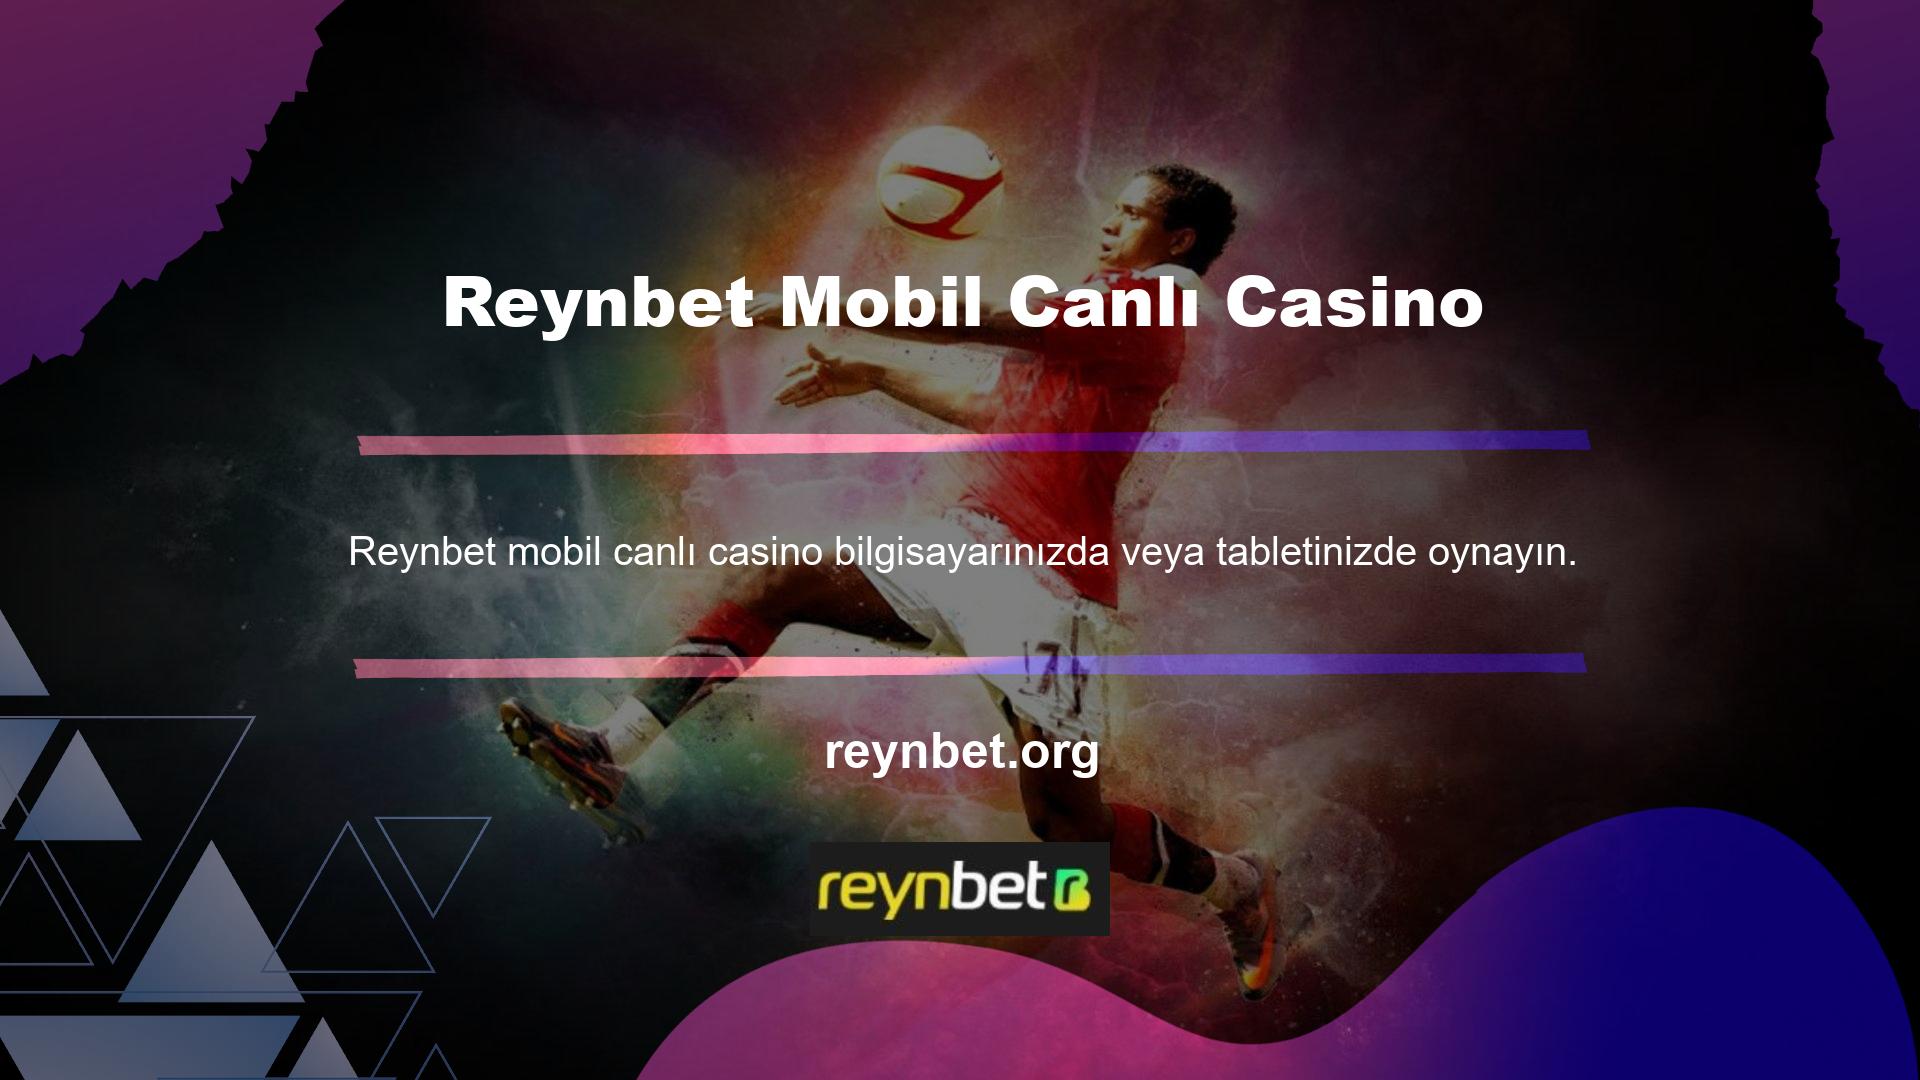 Reynbet, mobil canlı casino anlamına gelir, ancak aynı zamanda bir mobil uygulaması da vardır